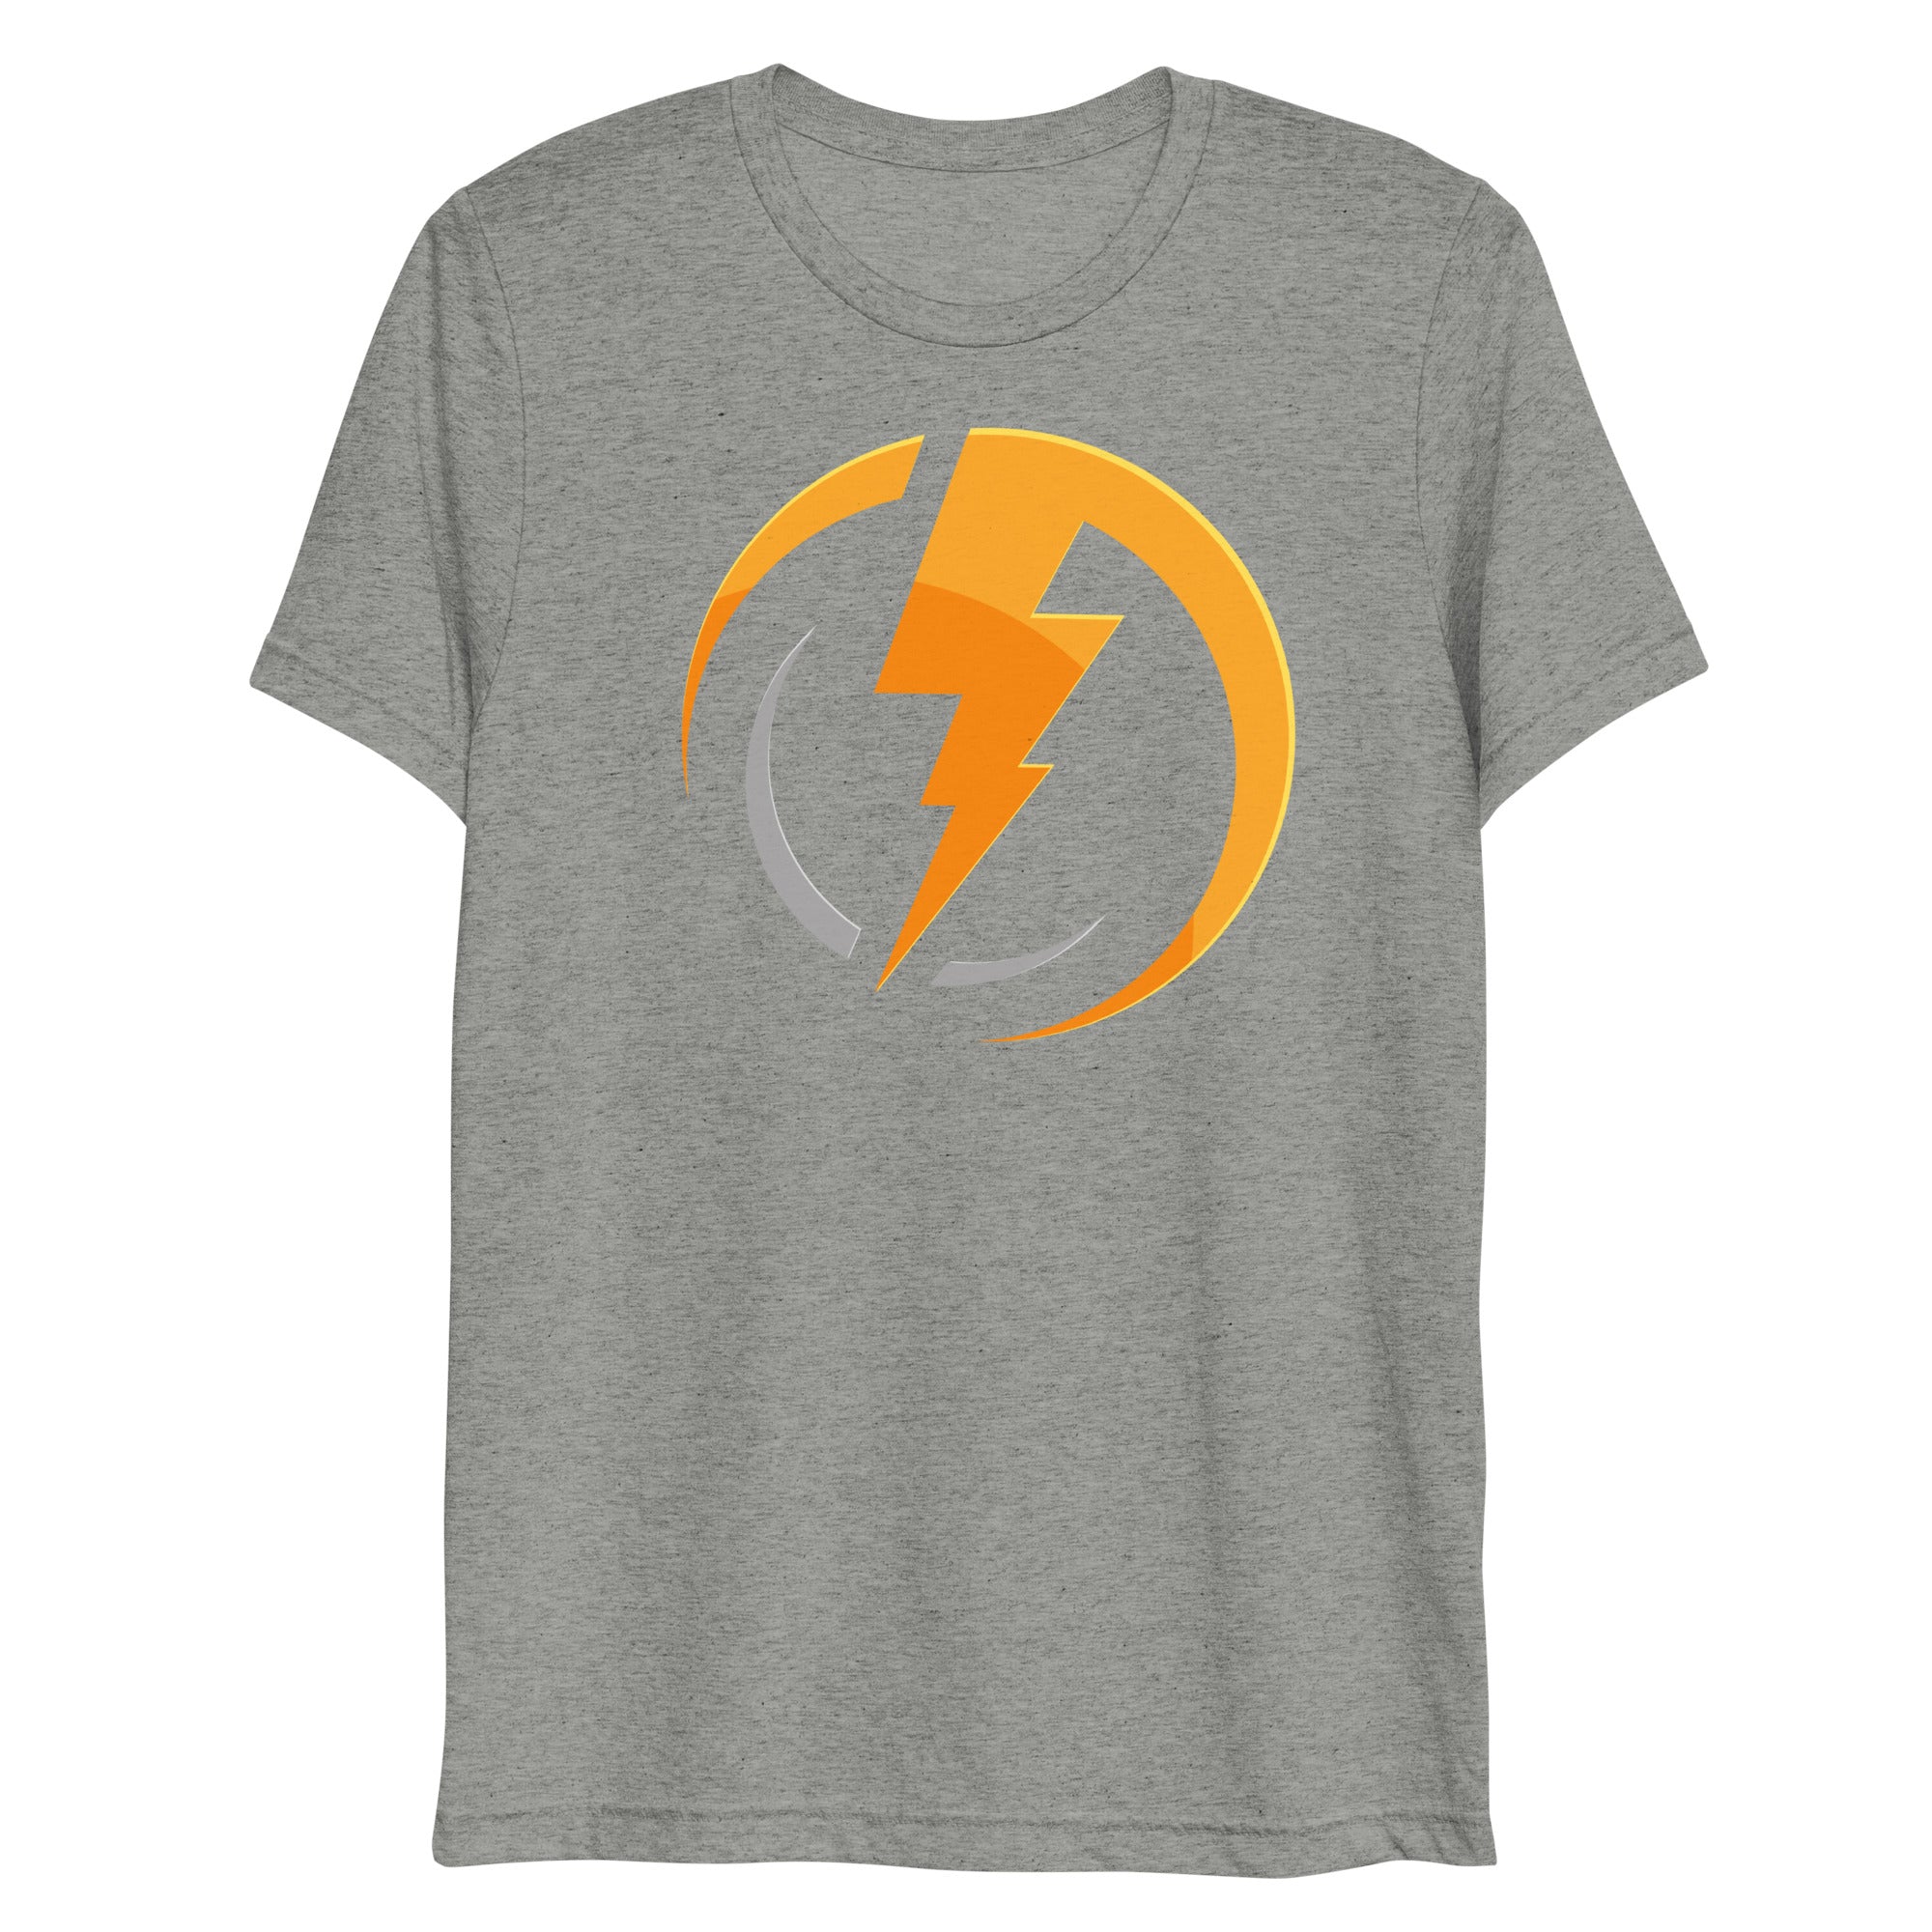 Lightning print t shirt for men’s